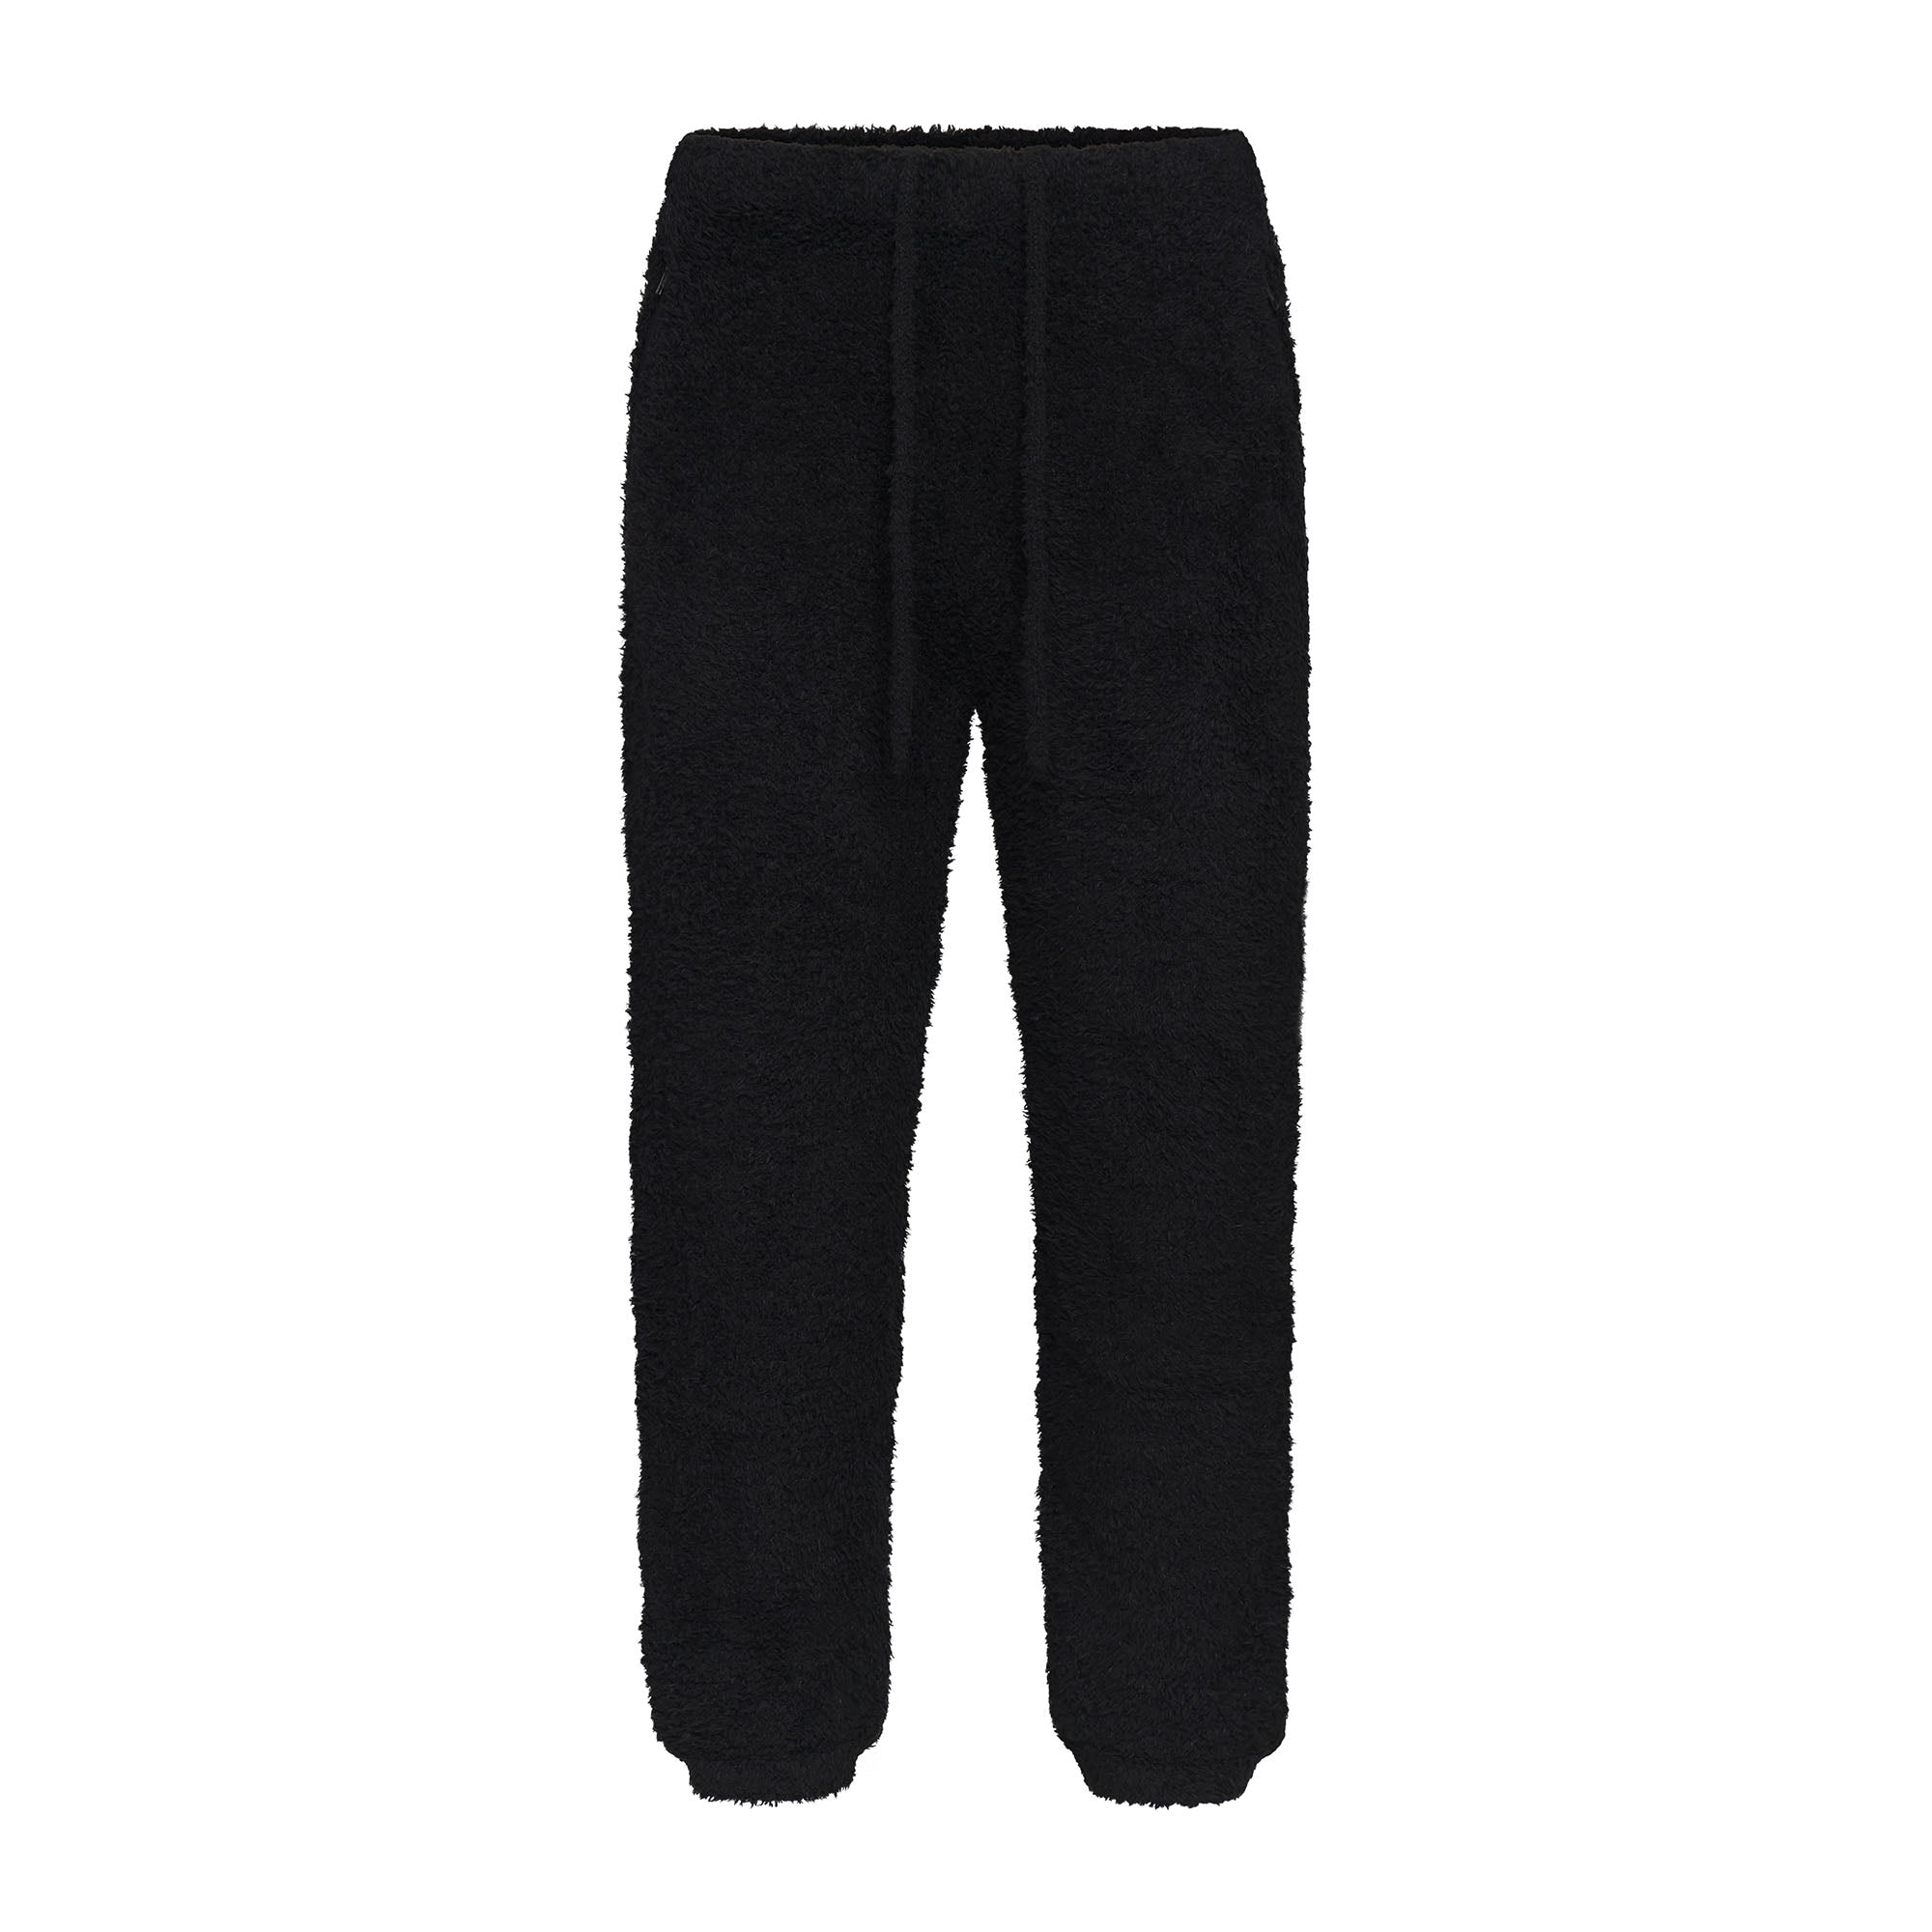 SKIMS Cozy Knit Boucle’ Lounge Pants Onyx Black Size L/XL NWT High Rise $108